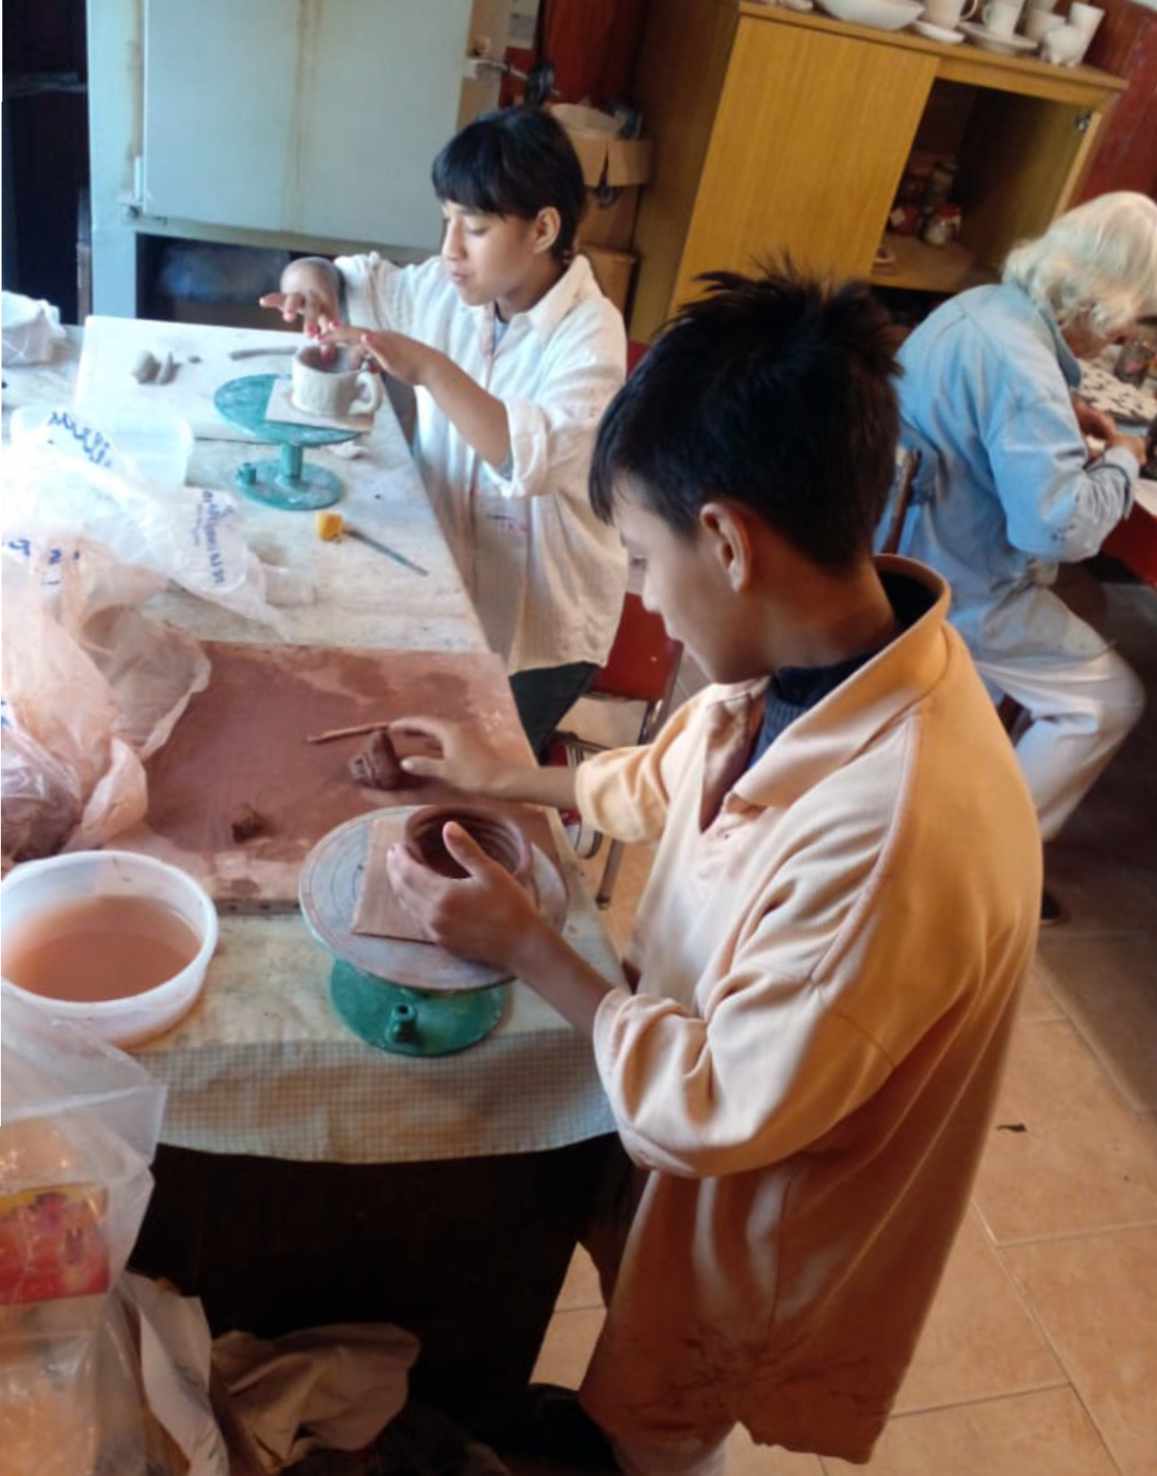 gemeinsame Keramik-Werkstatt bei ASE